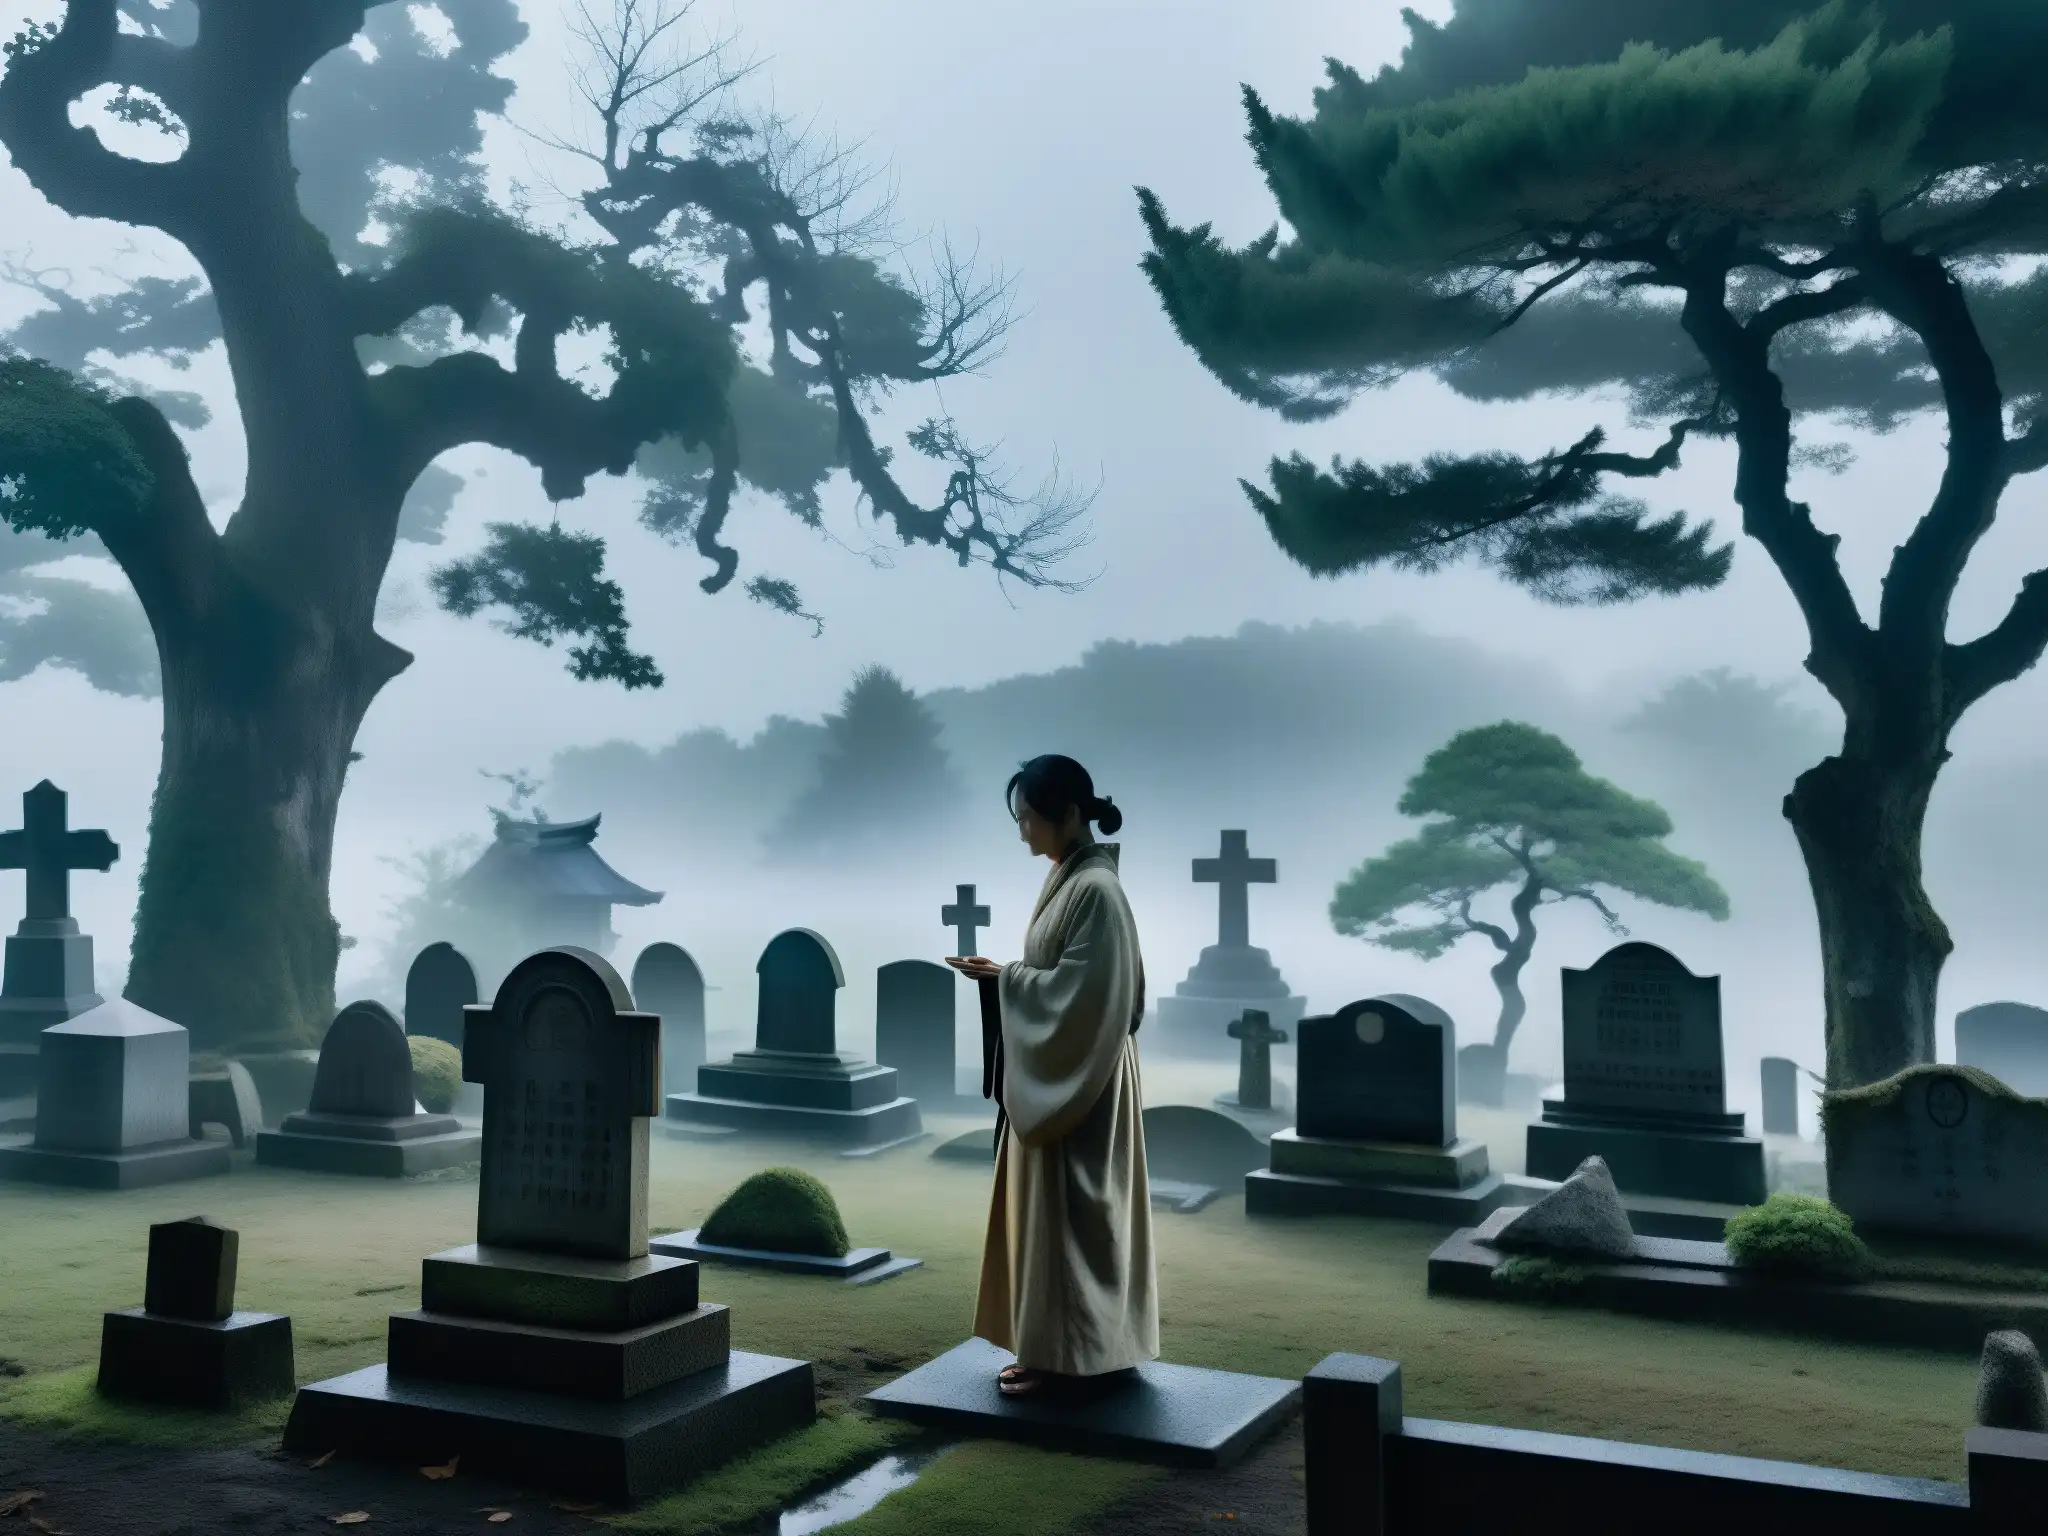 En un cementerio rural de Japón, entre la niebla y la luz de la luna, un ser espectral come una ofrenda